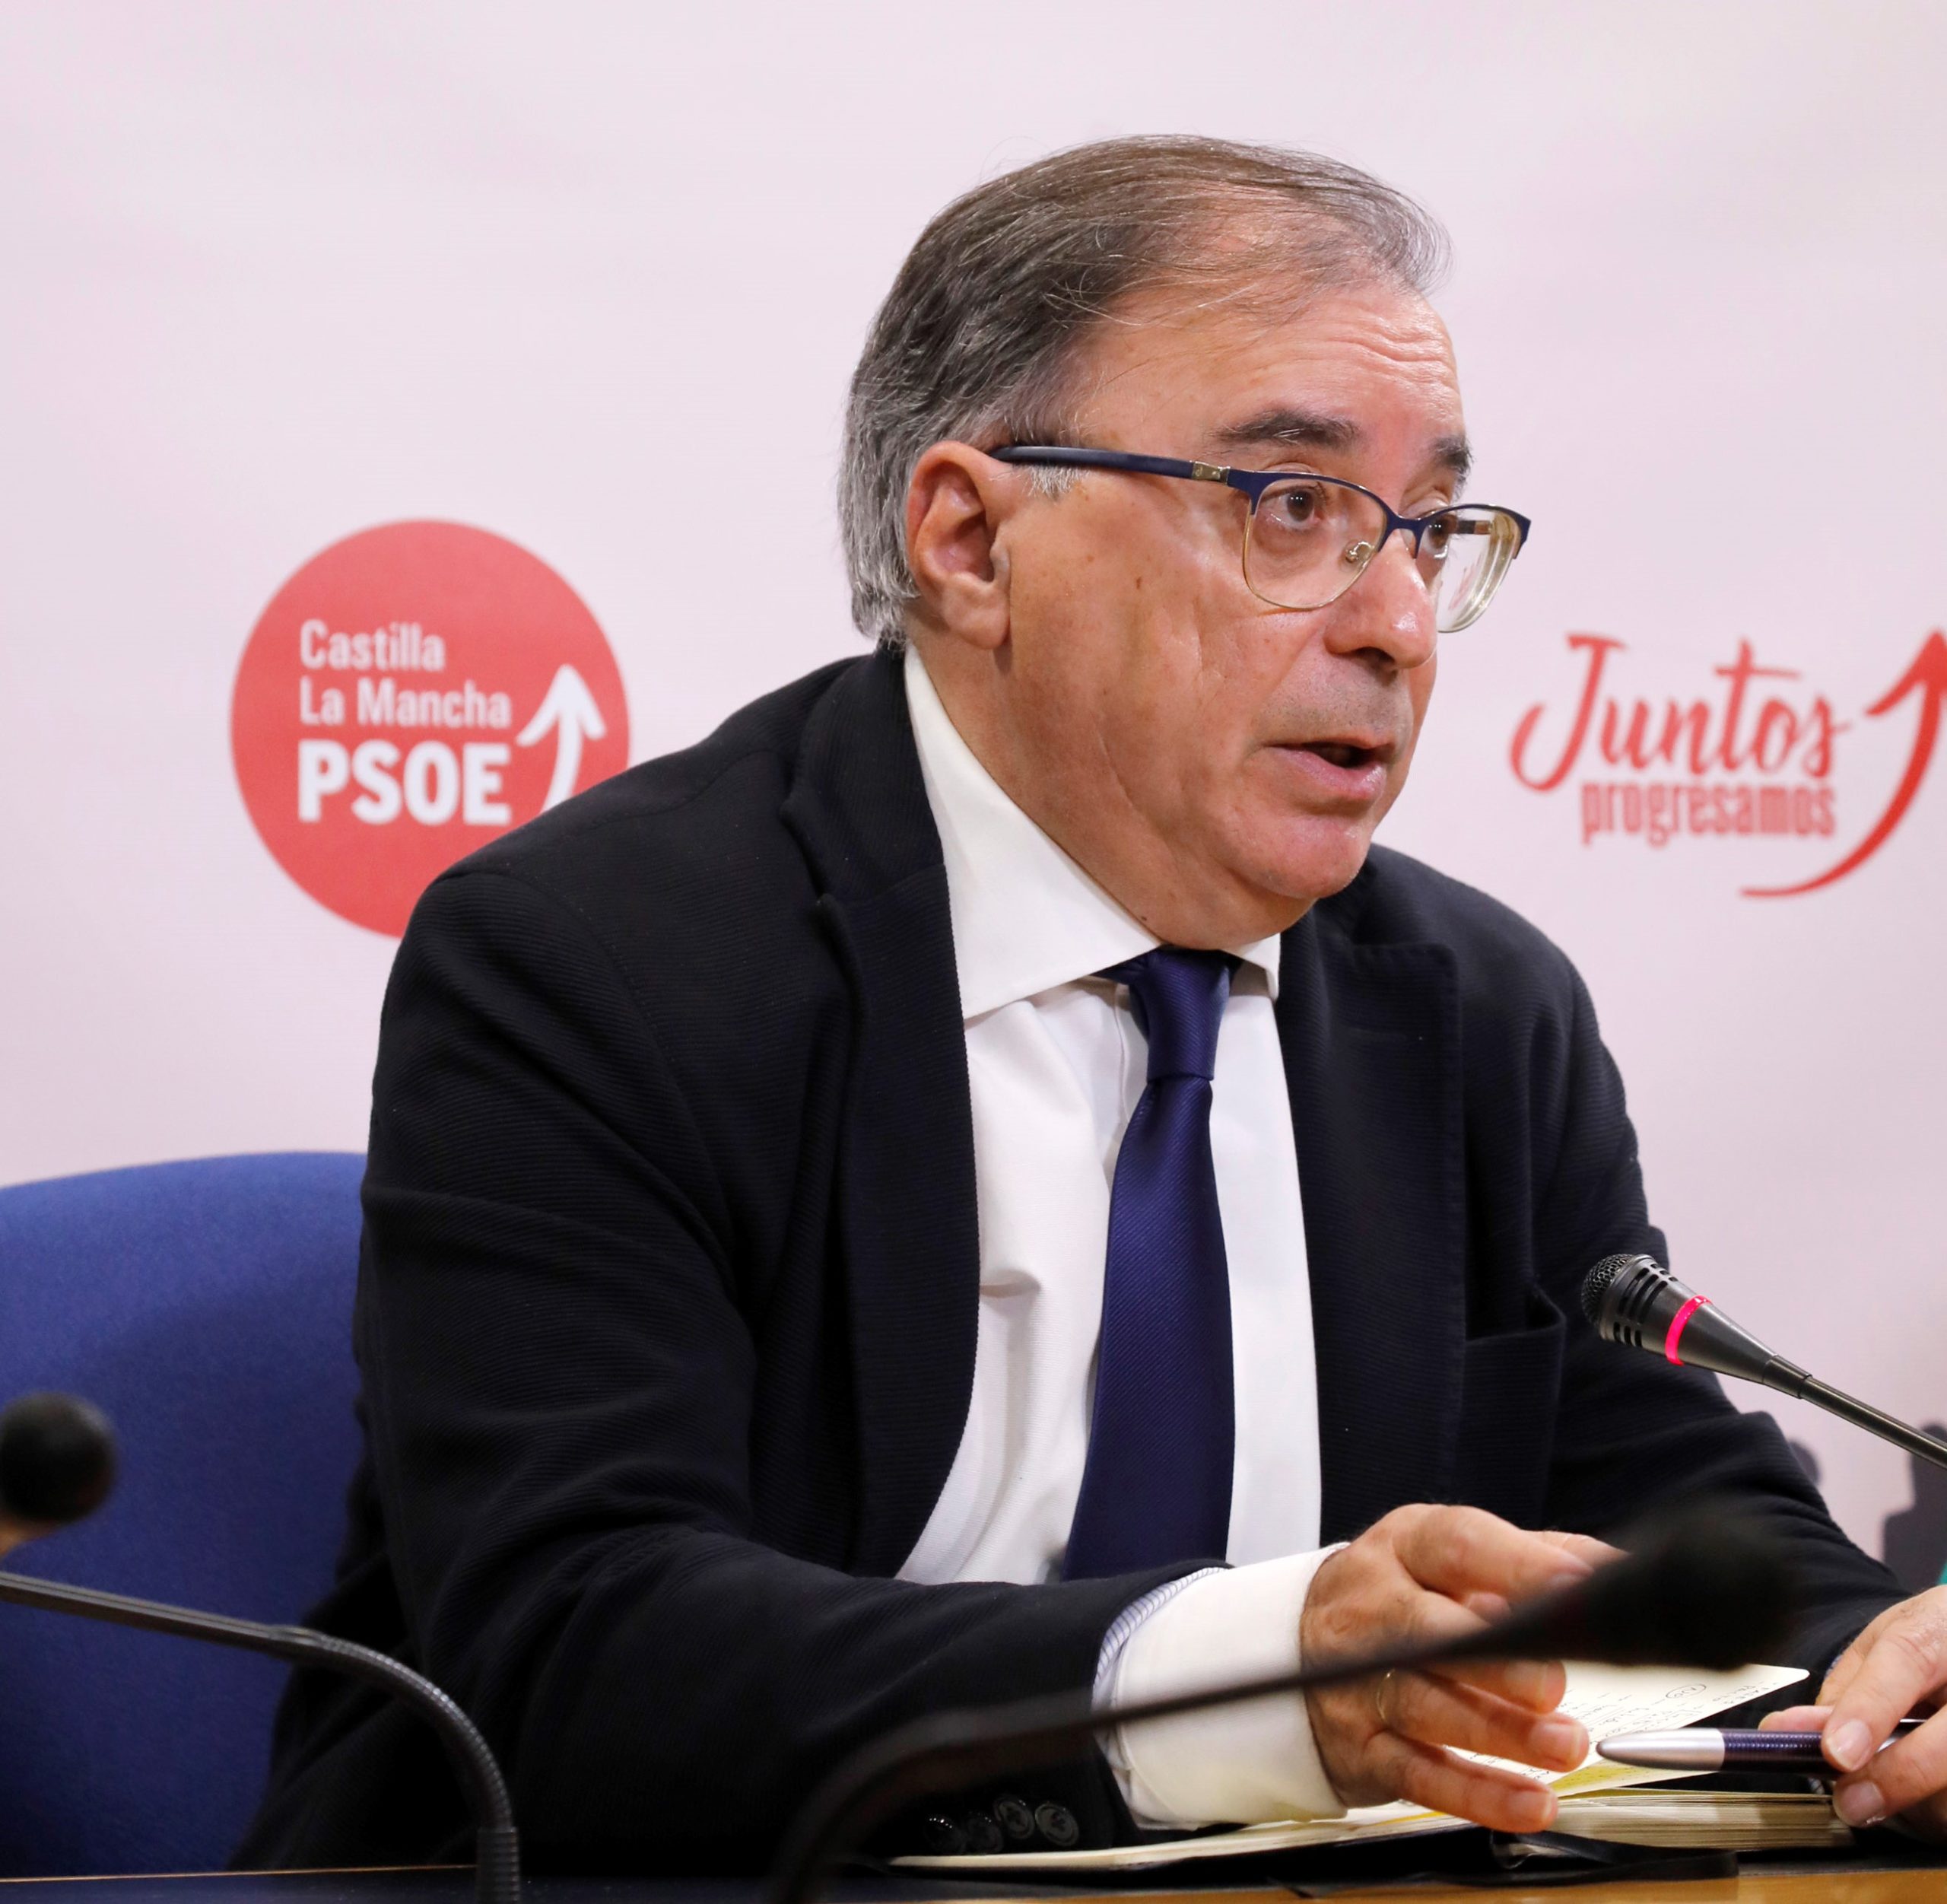 El PSOE pide un día más sus propuestas a Núñez: “Tienen la oportunidad de sumarse, de tener grandes miras hacia CLM”